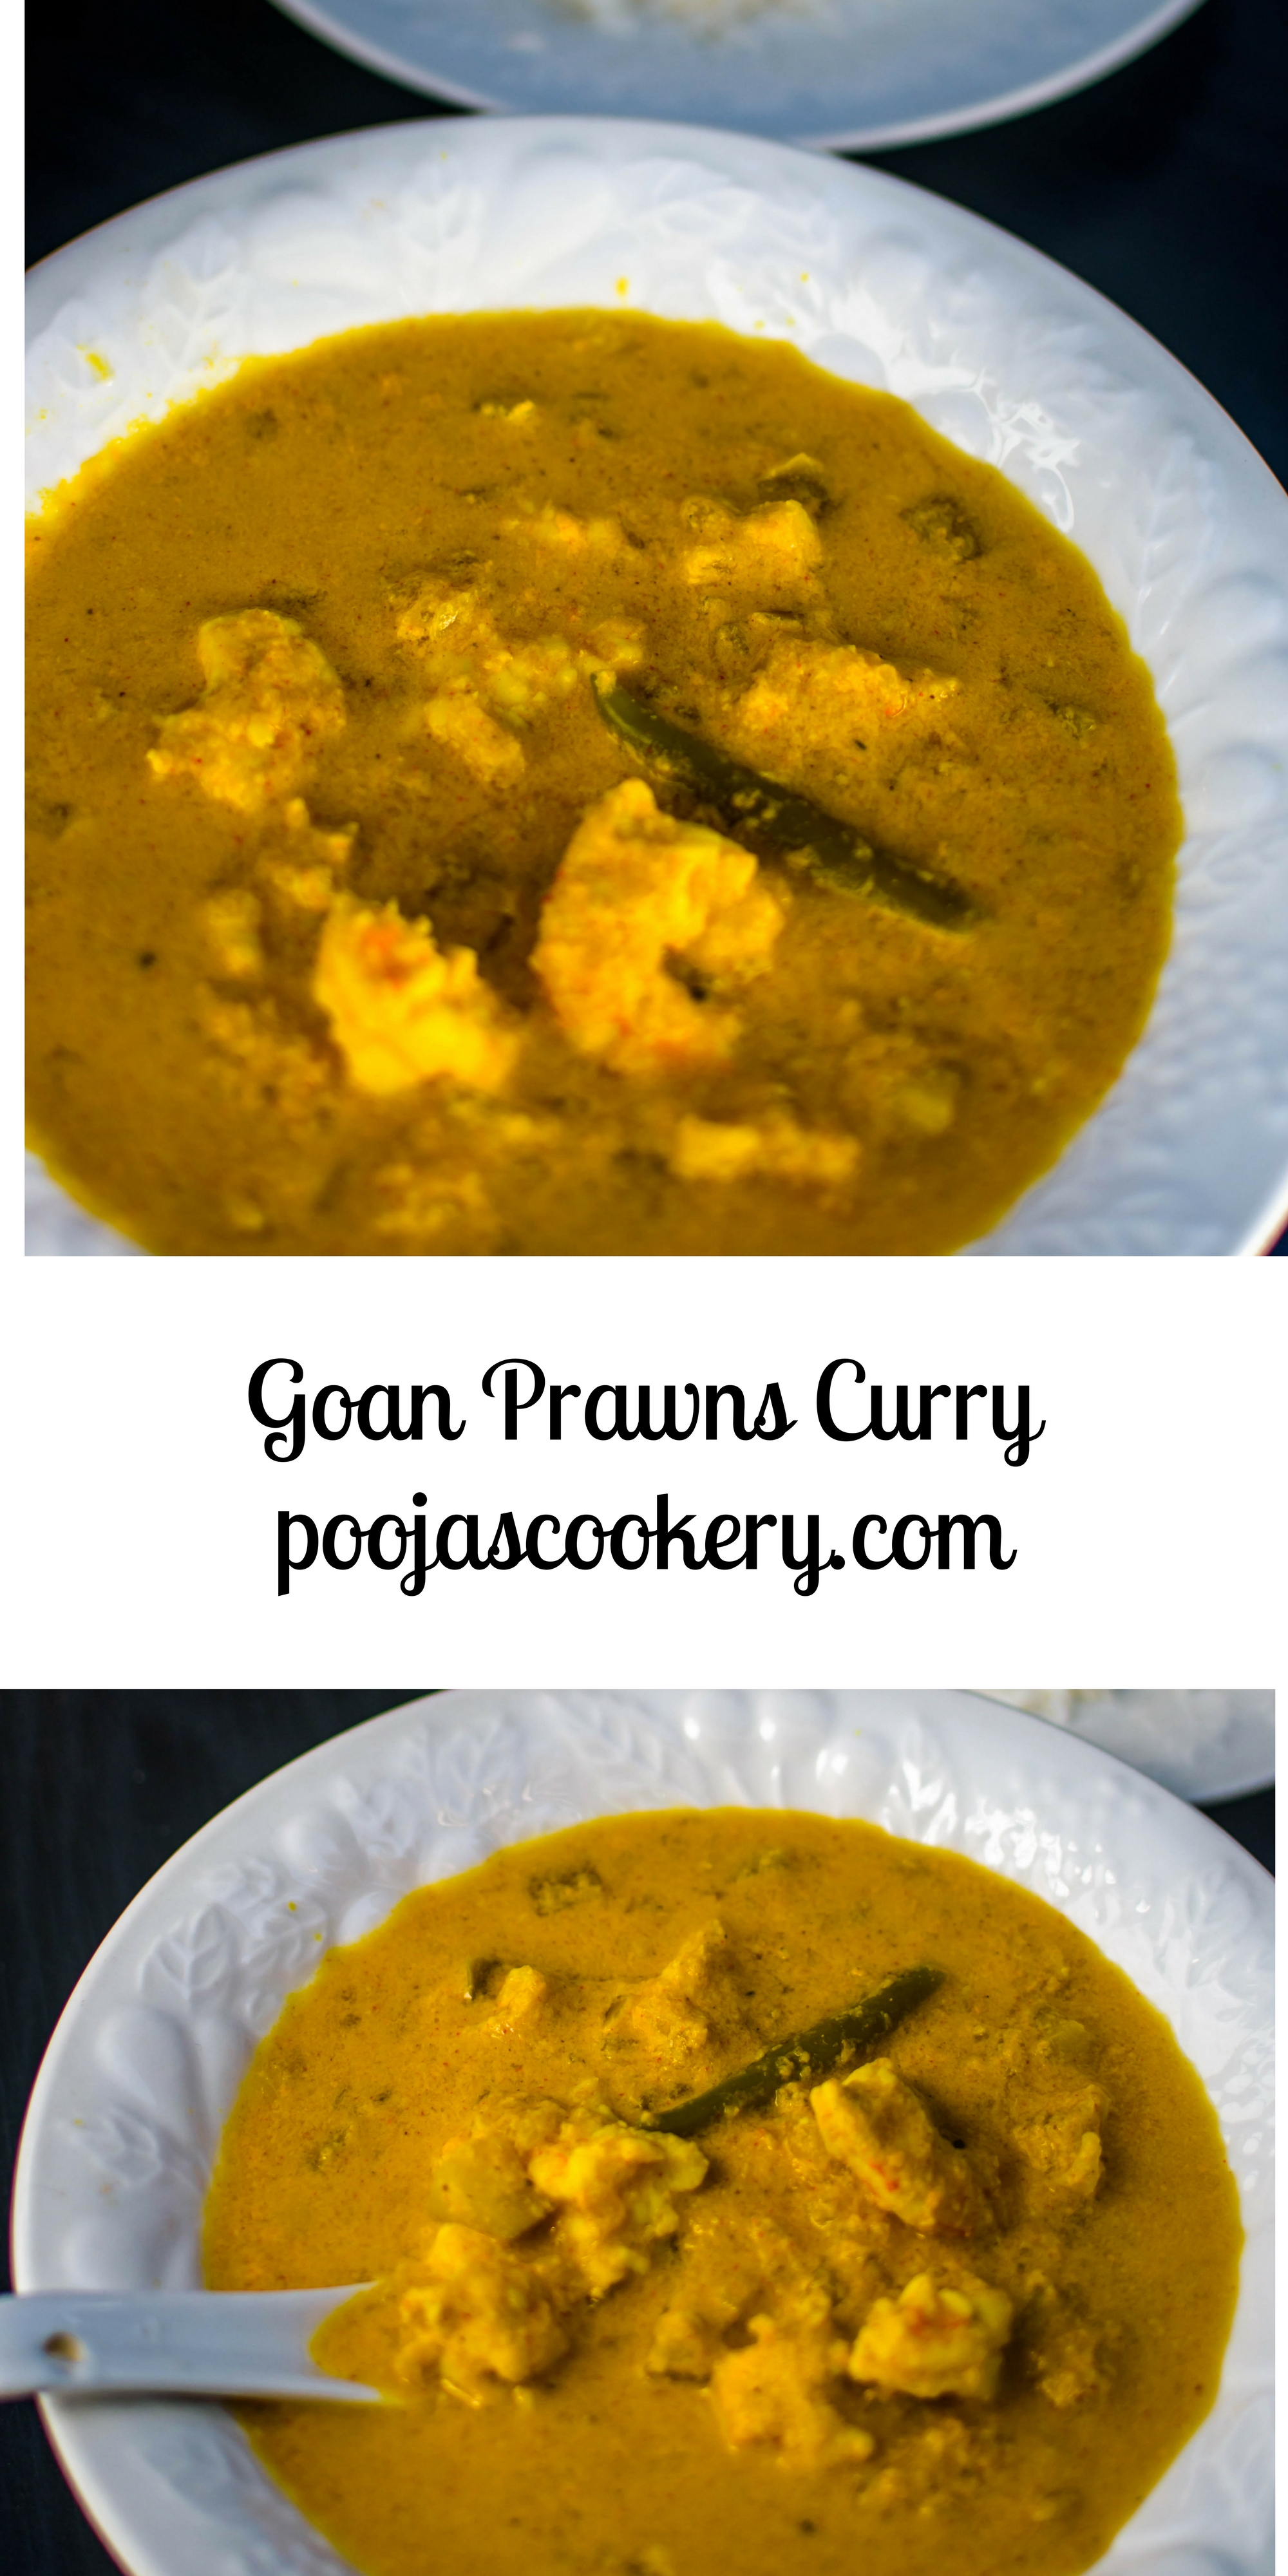 Goan Prawns Curry